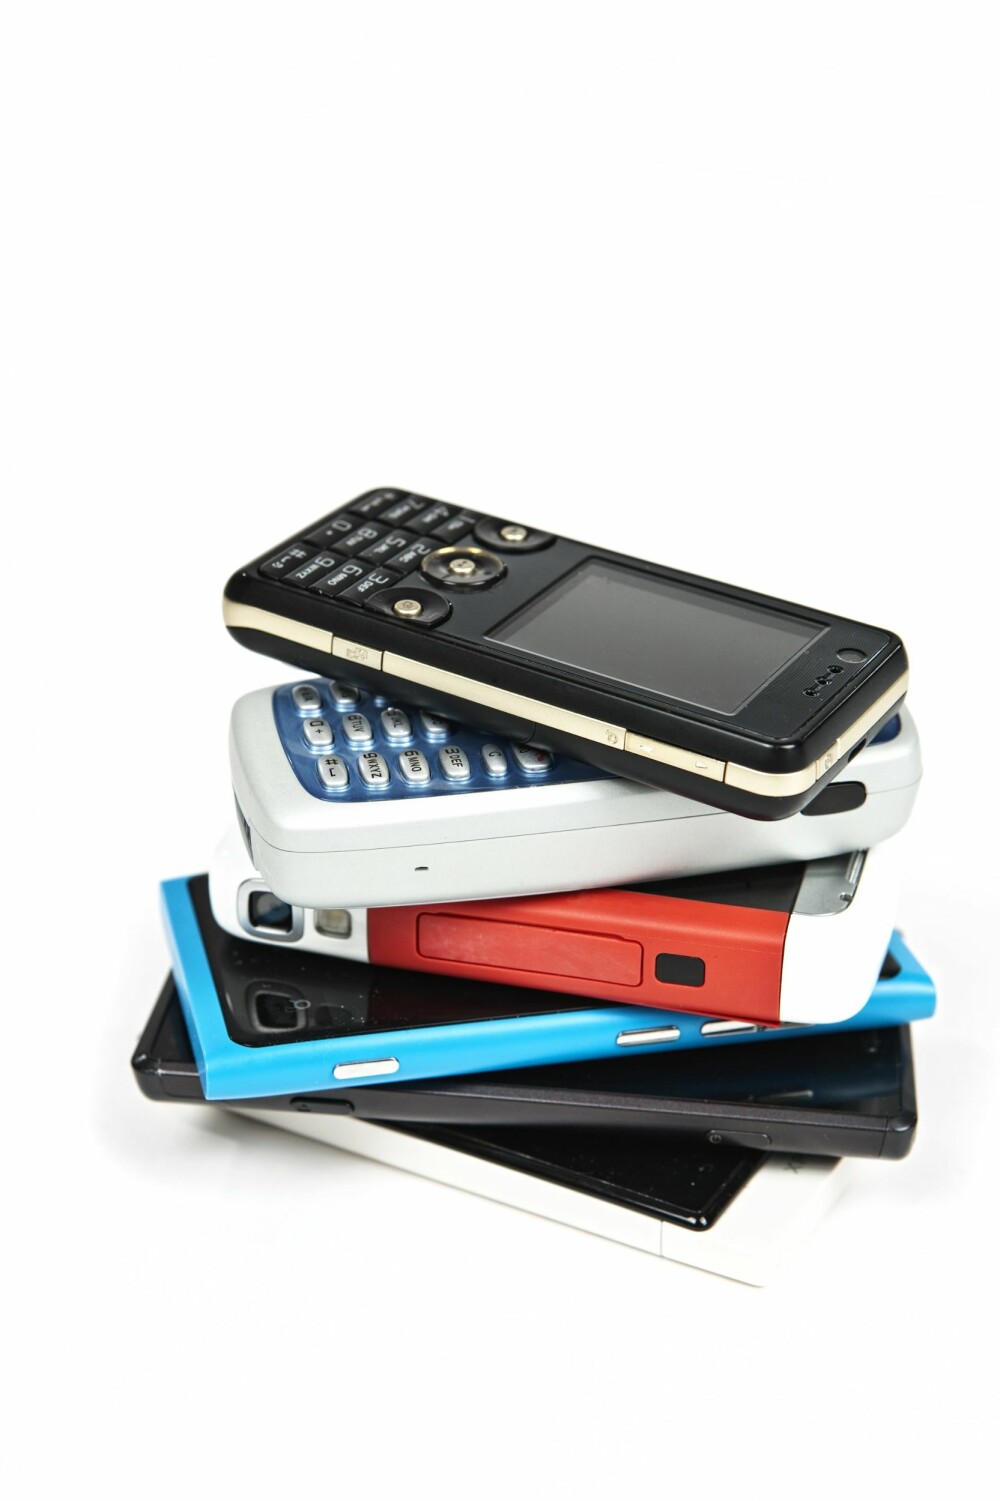 Kanskje har du en bunke av gamle mobiler, hvor det ligger en egnet smarttelefon du kan bruke?